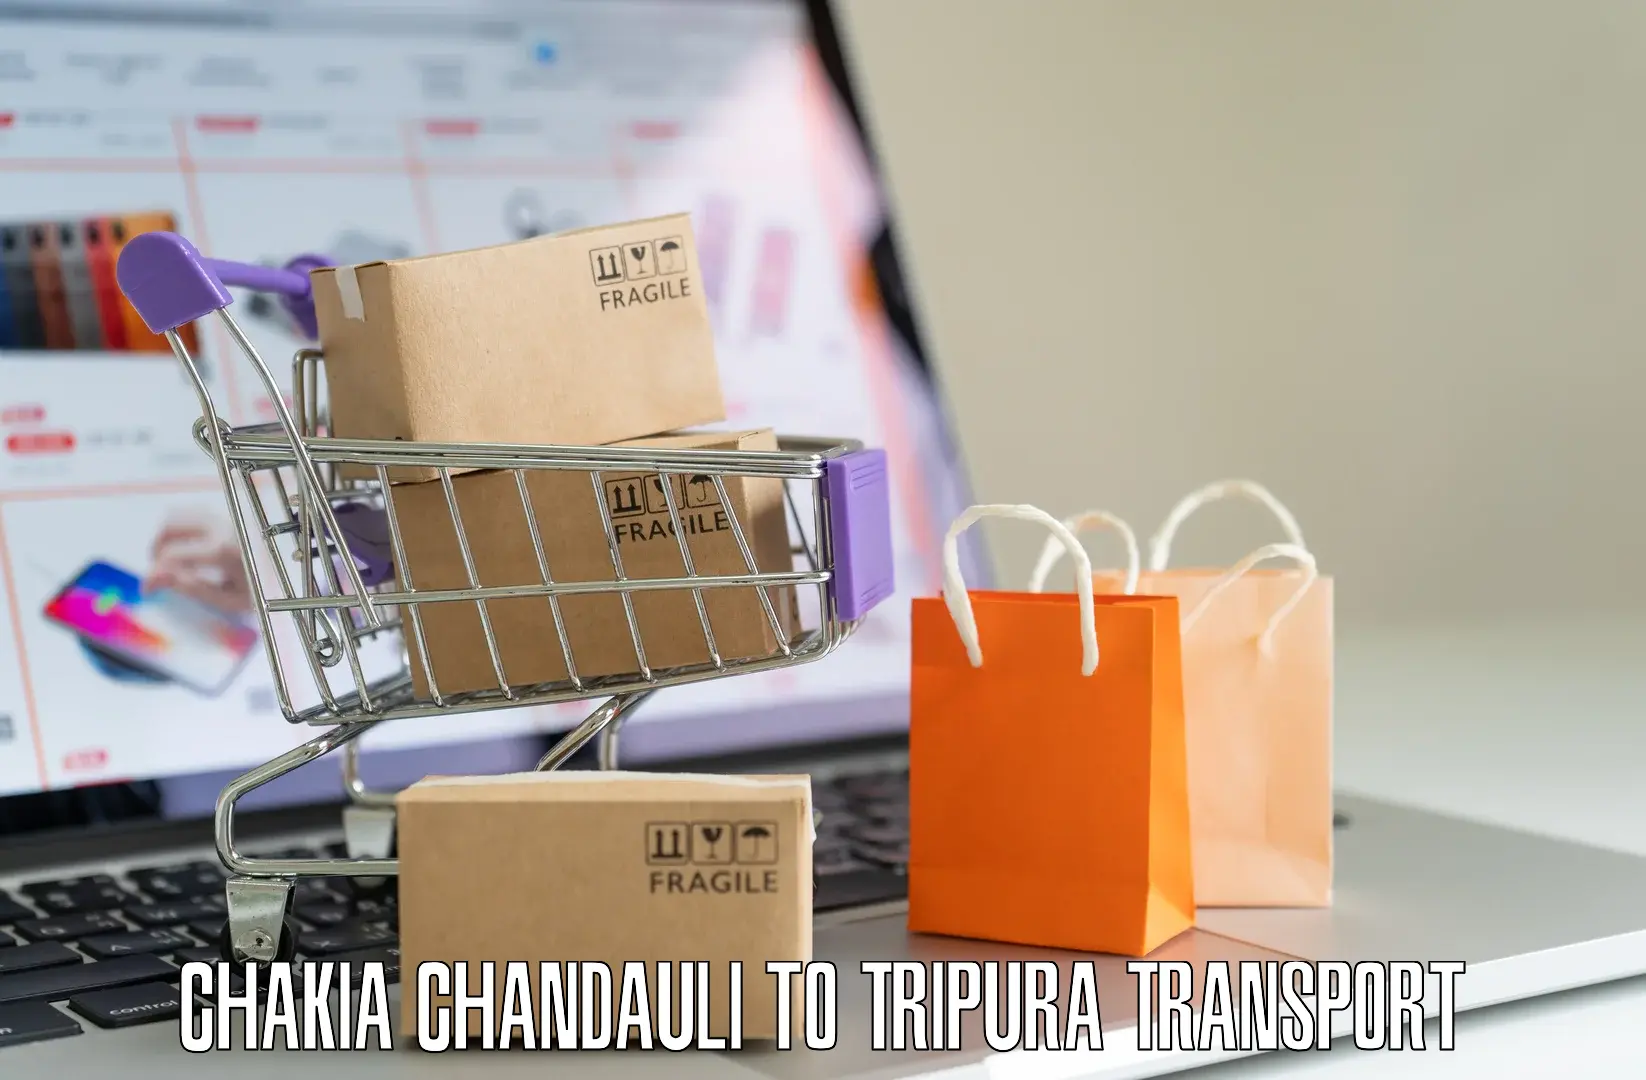 Daily transport service in Chakia Chandauli to Ambassa